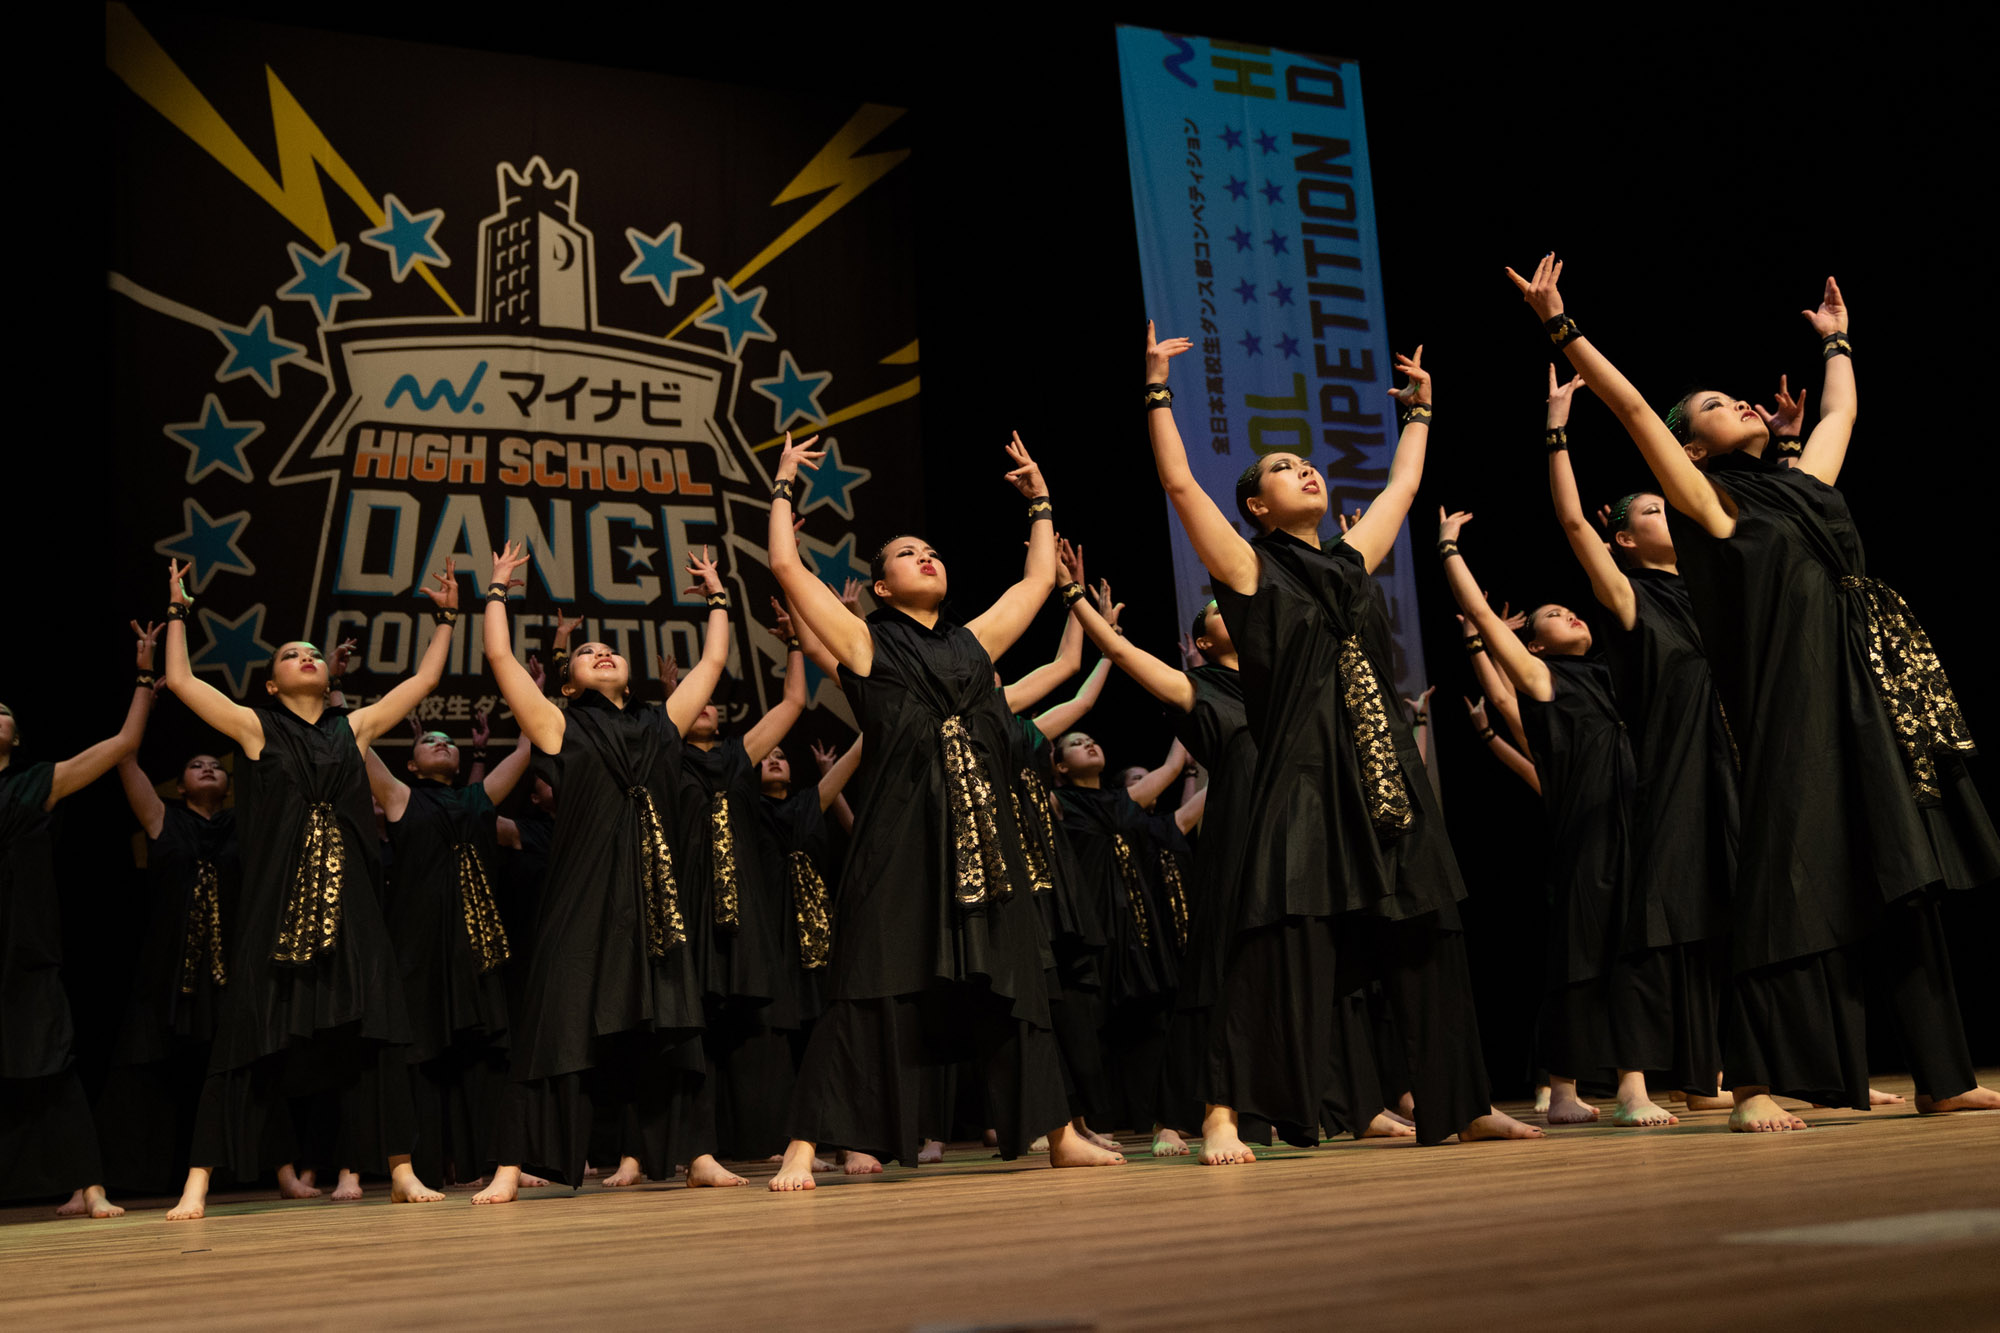 マイナビHIGH SCHOOL DANCE COMPETITION WEST 2020 VOL.2 結果